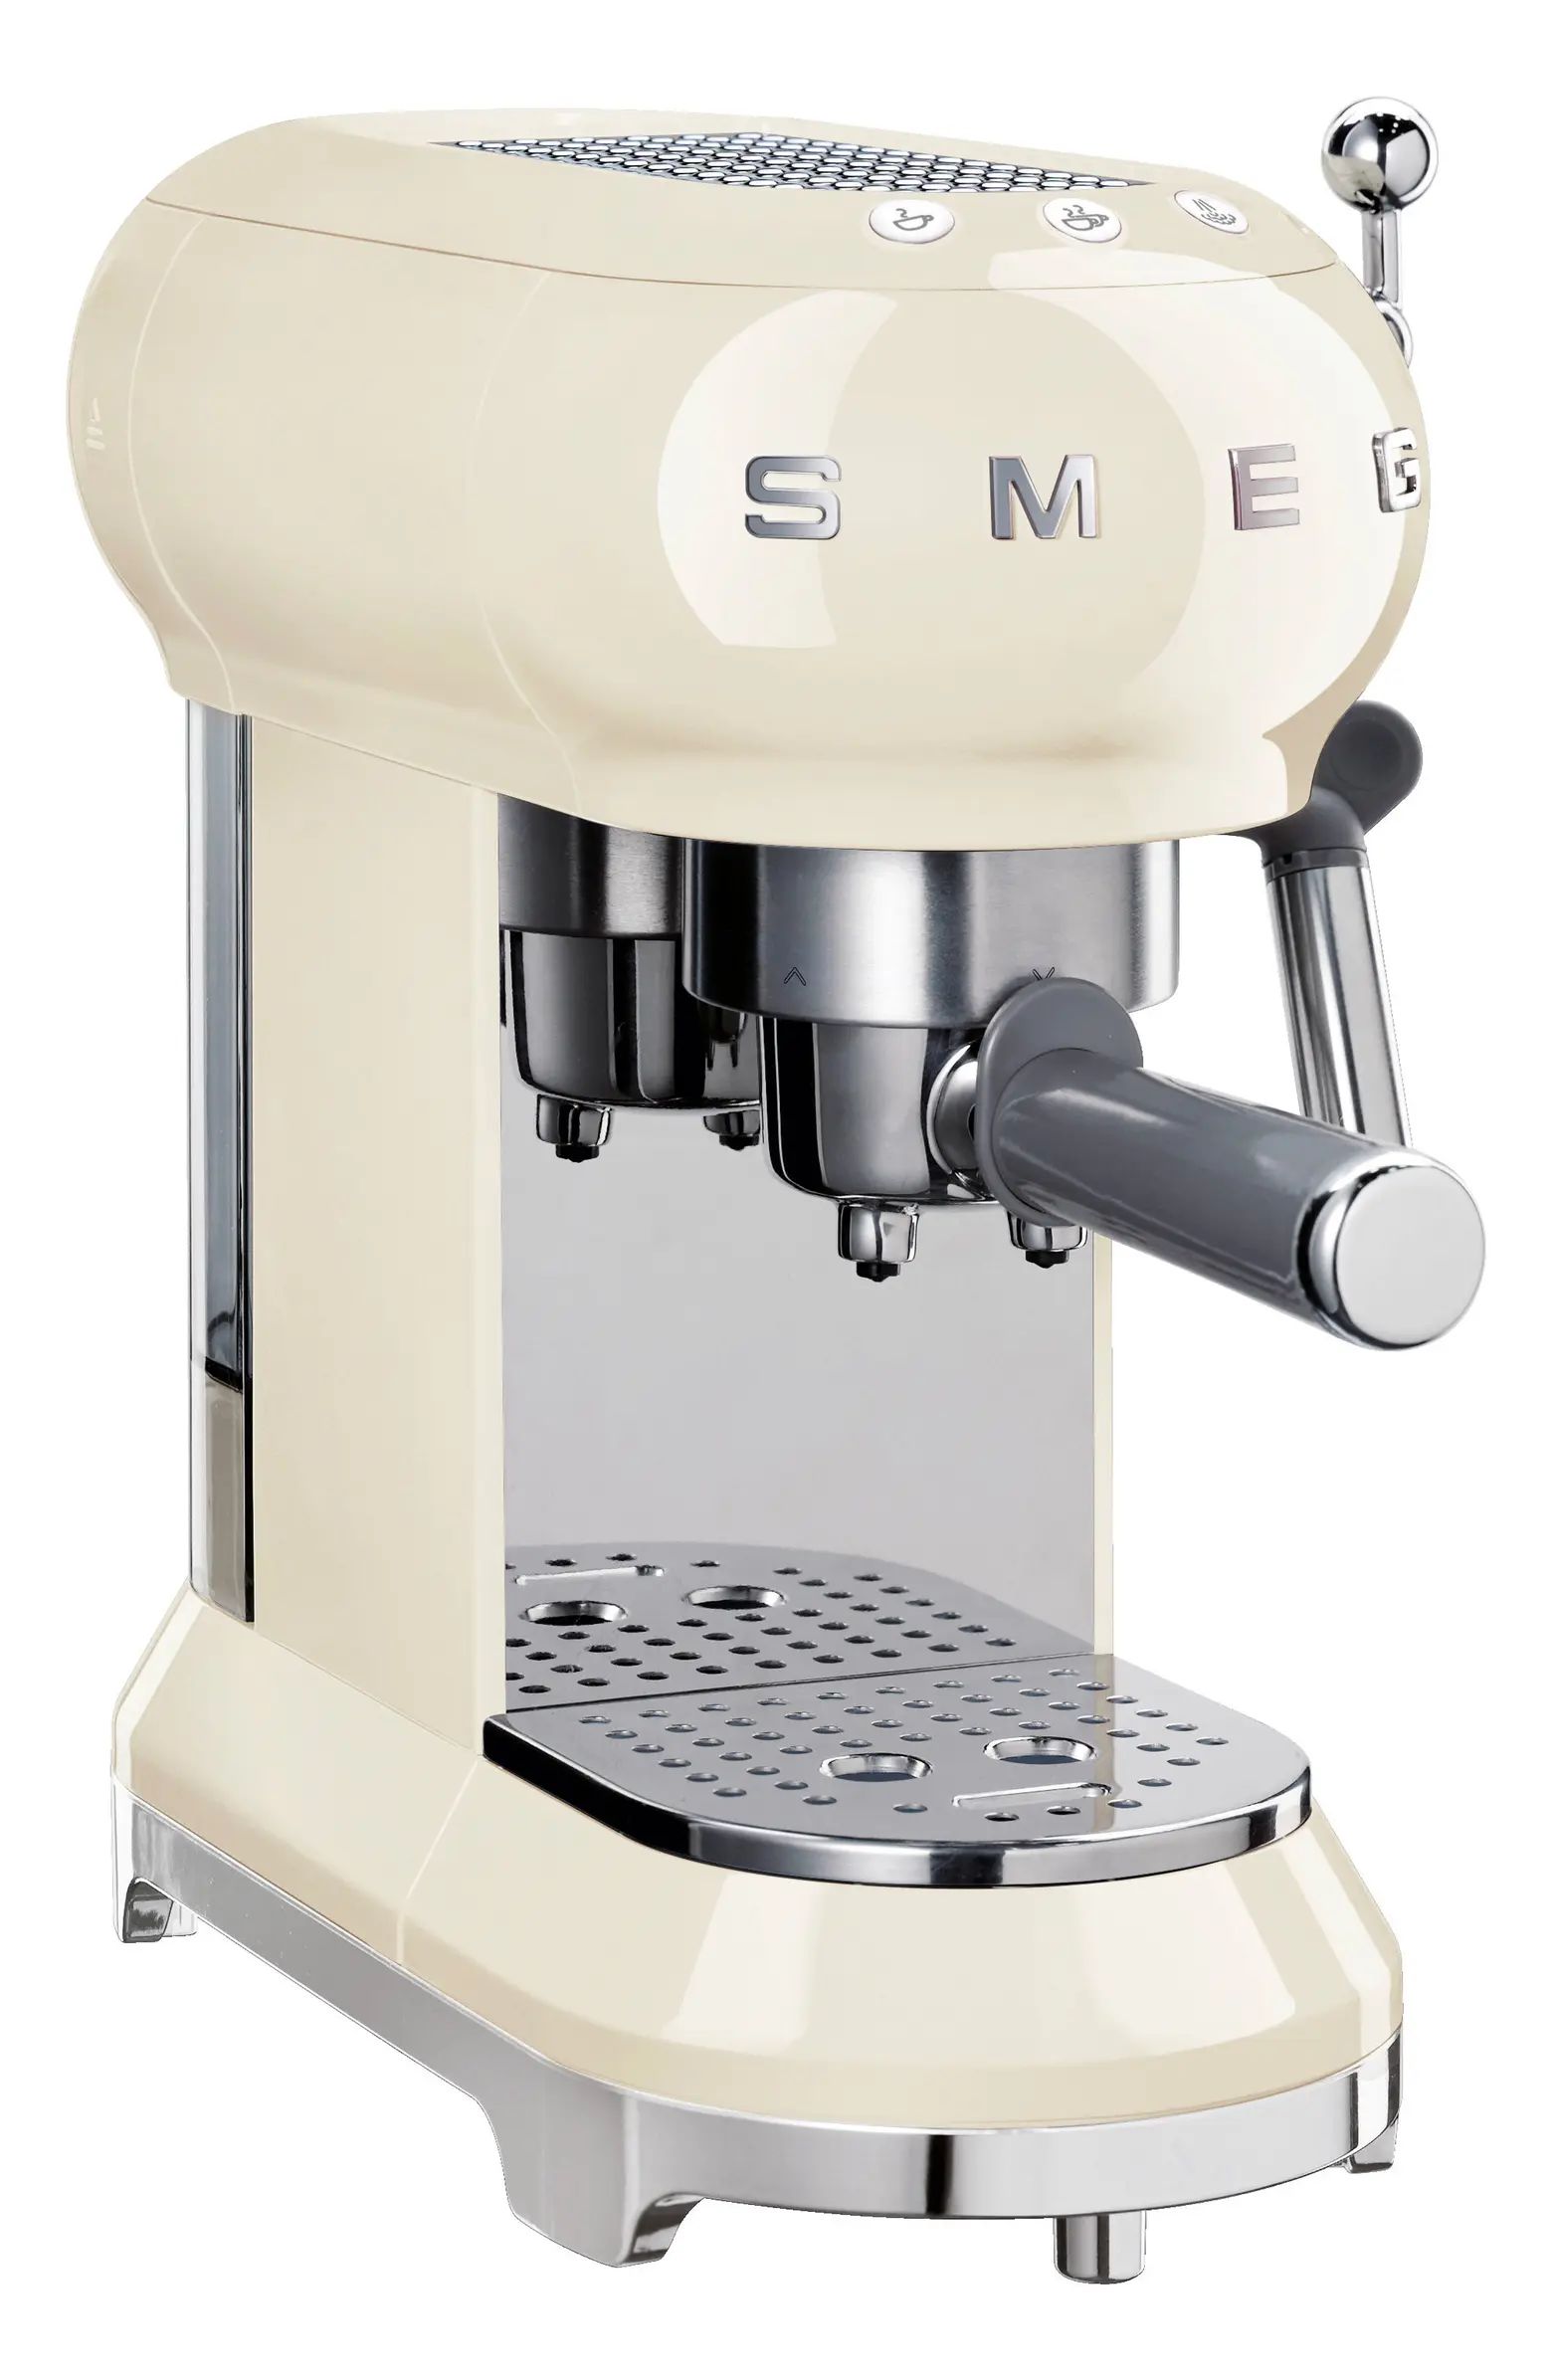 '50s Retro Style Espresso Coffee Machine | Nordstrom